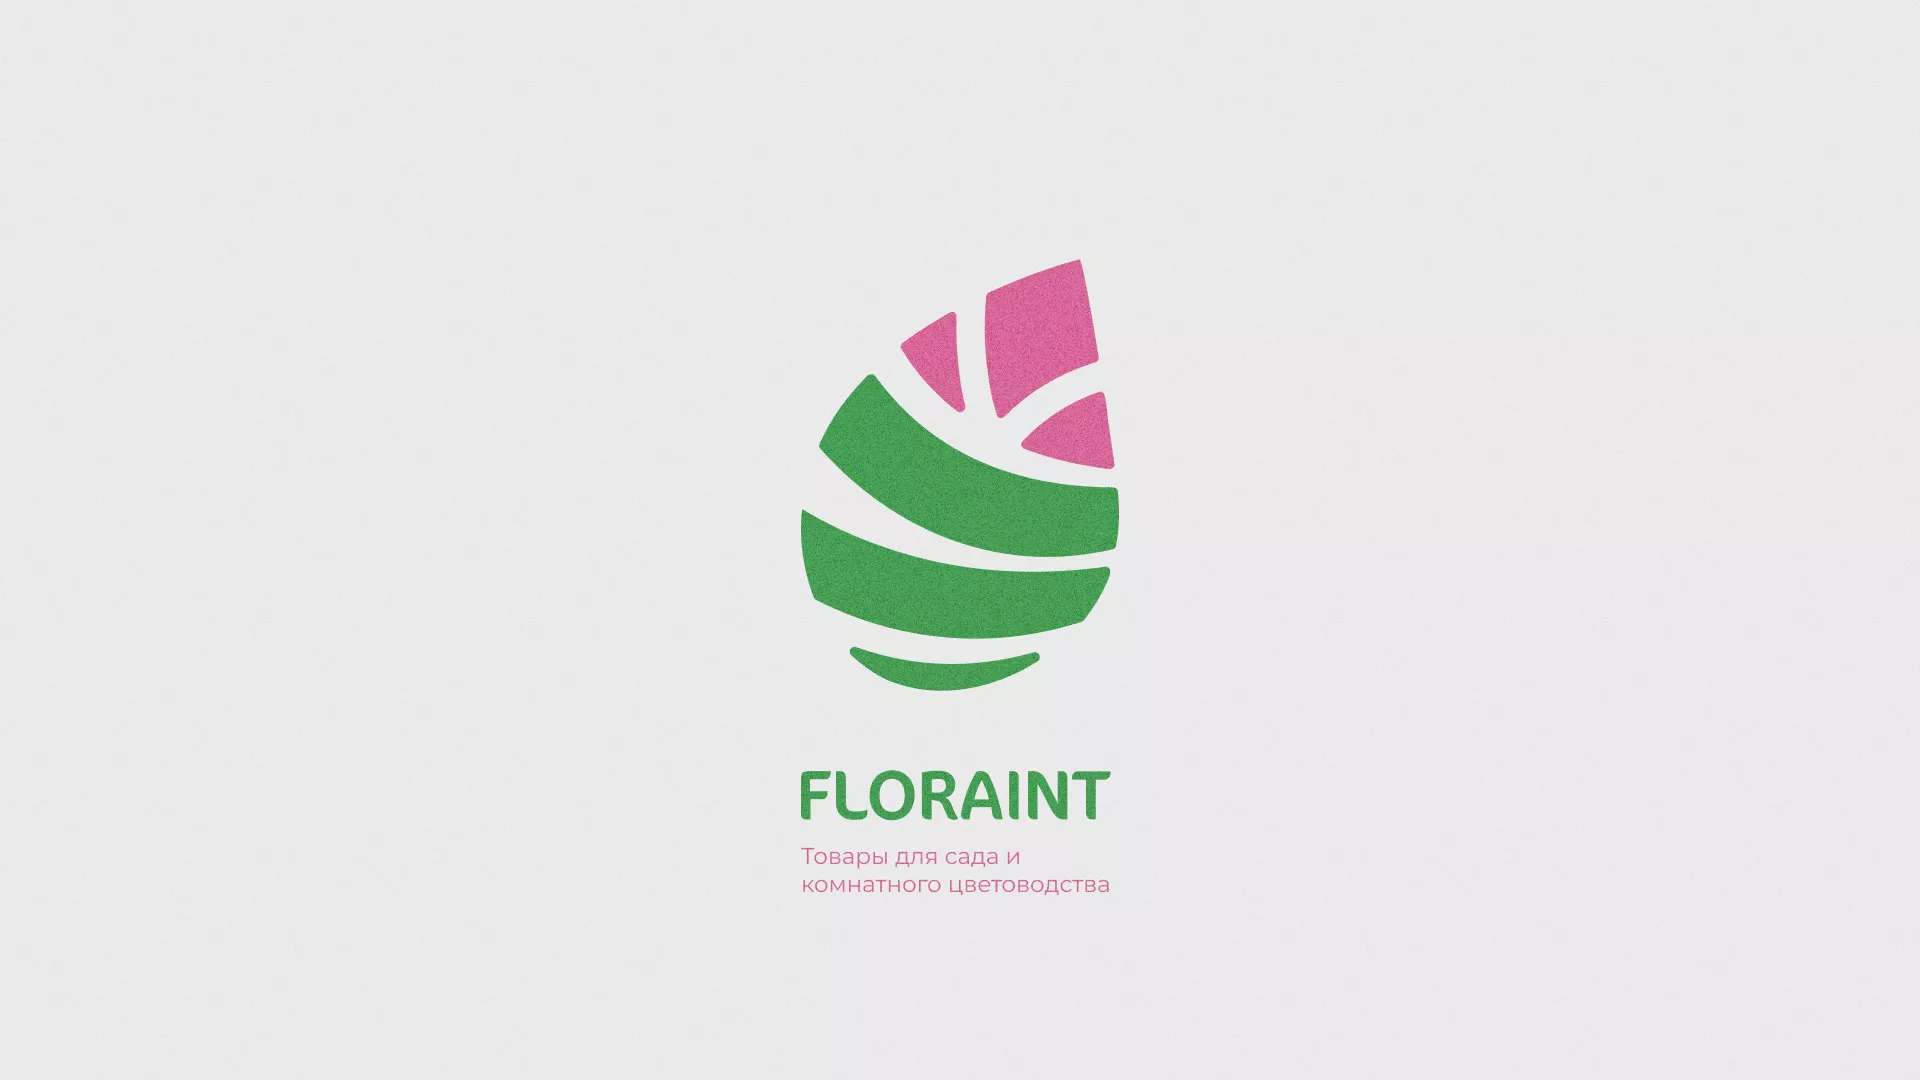 Разработка оформления профиля Instagram для магазина «Floraint» в Люберцах